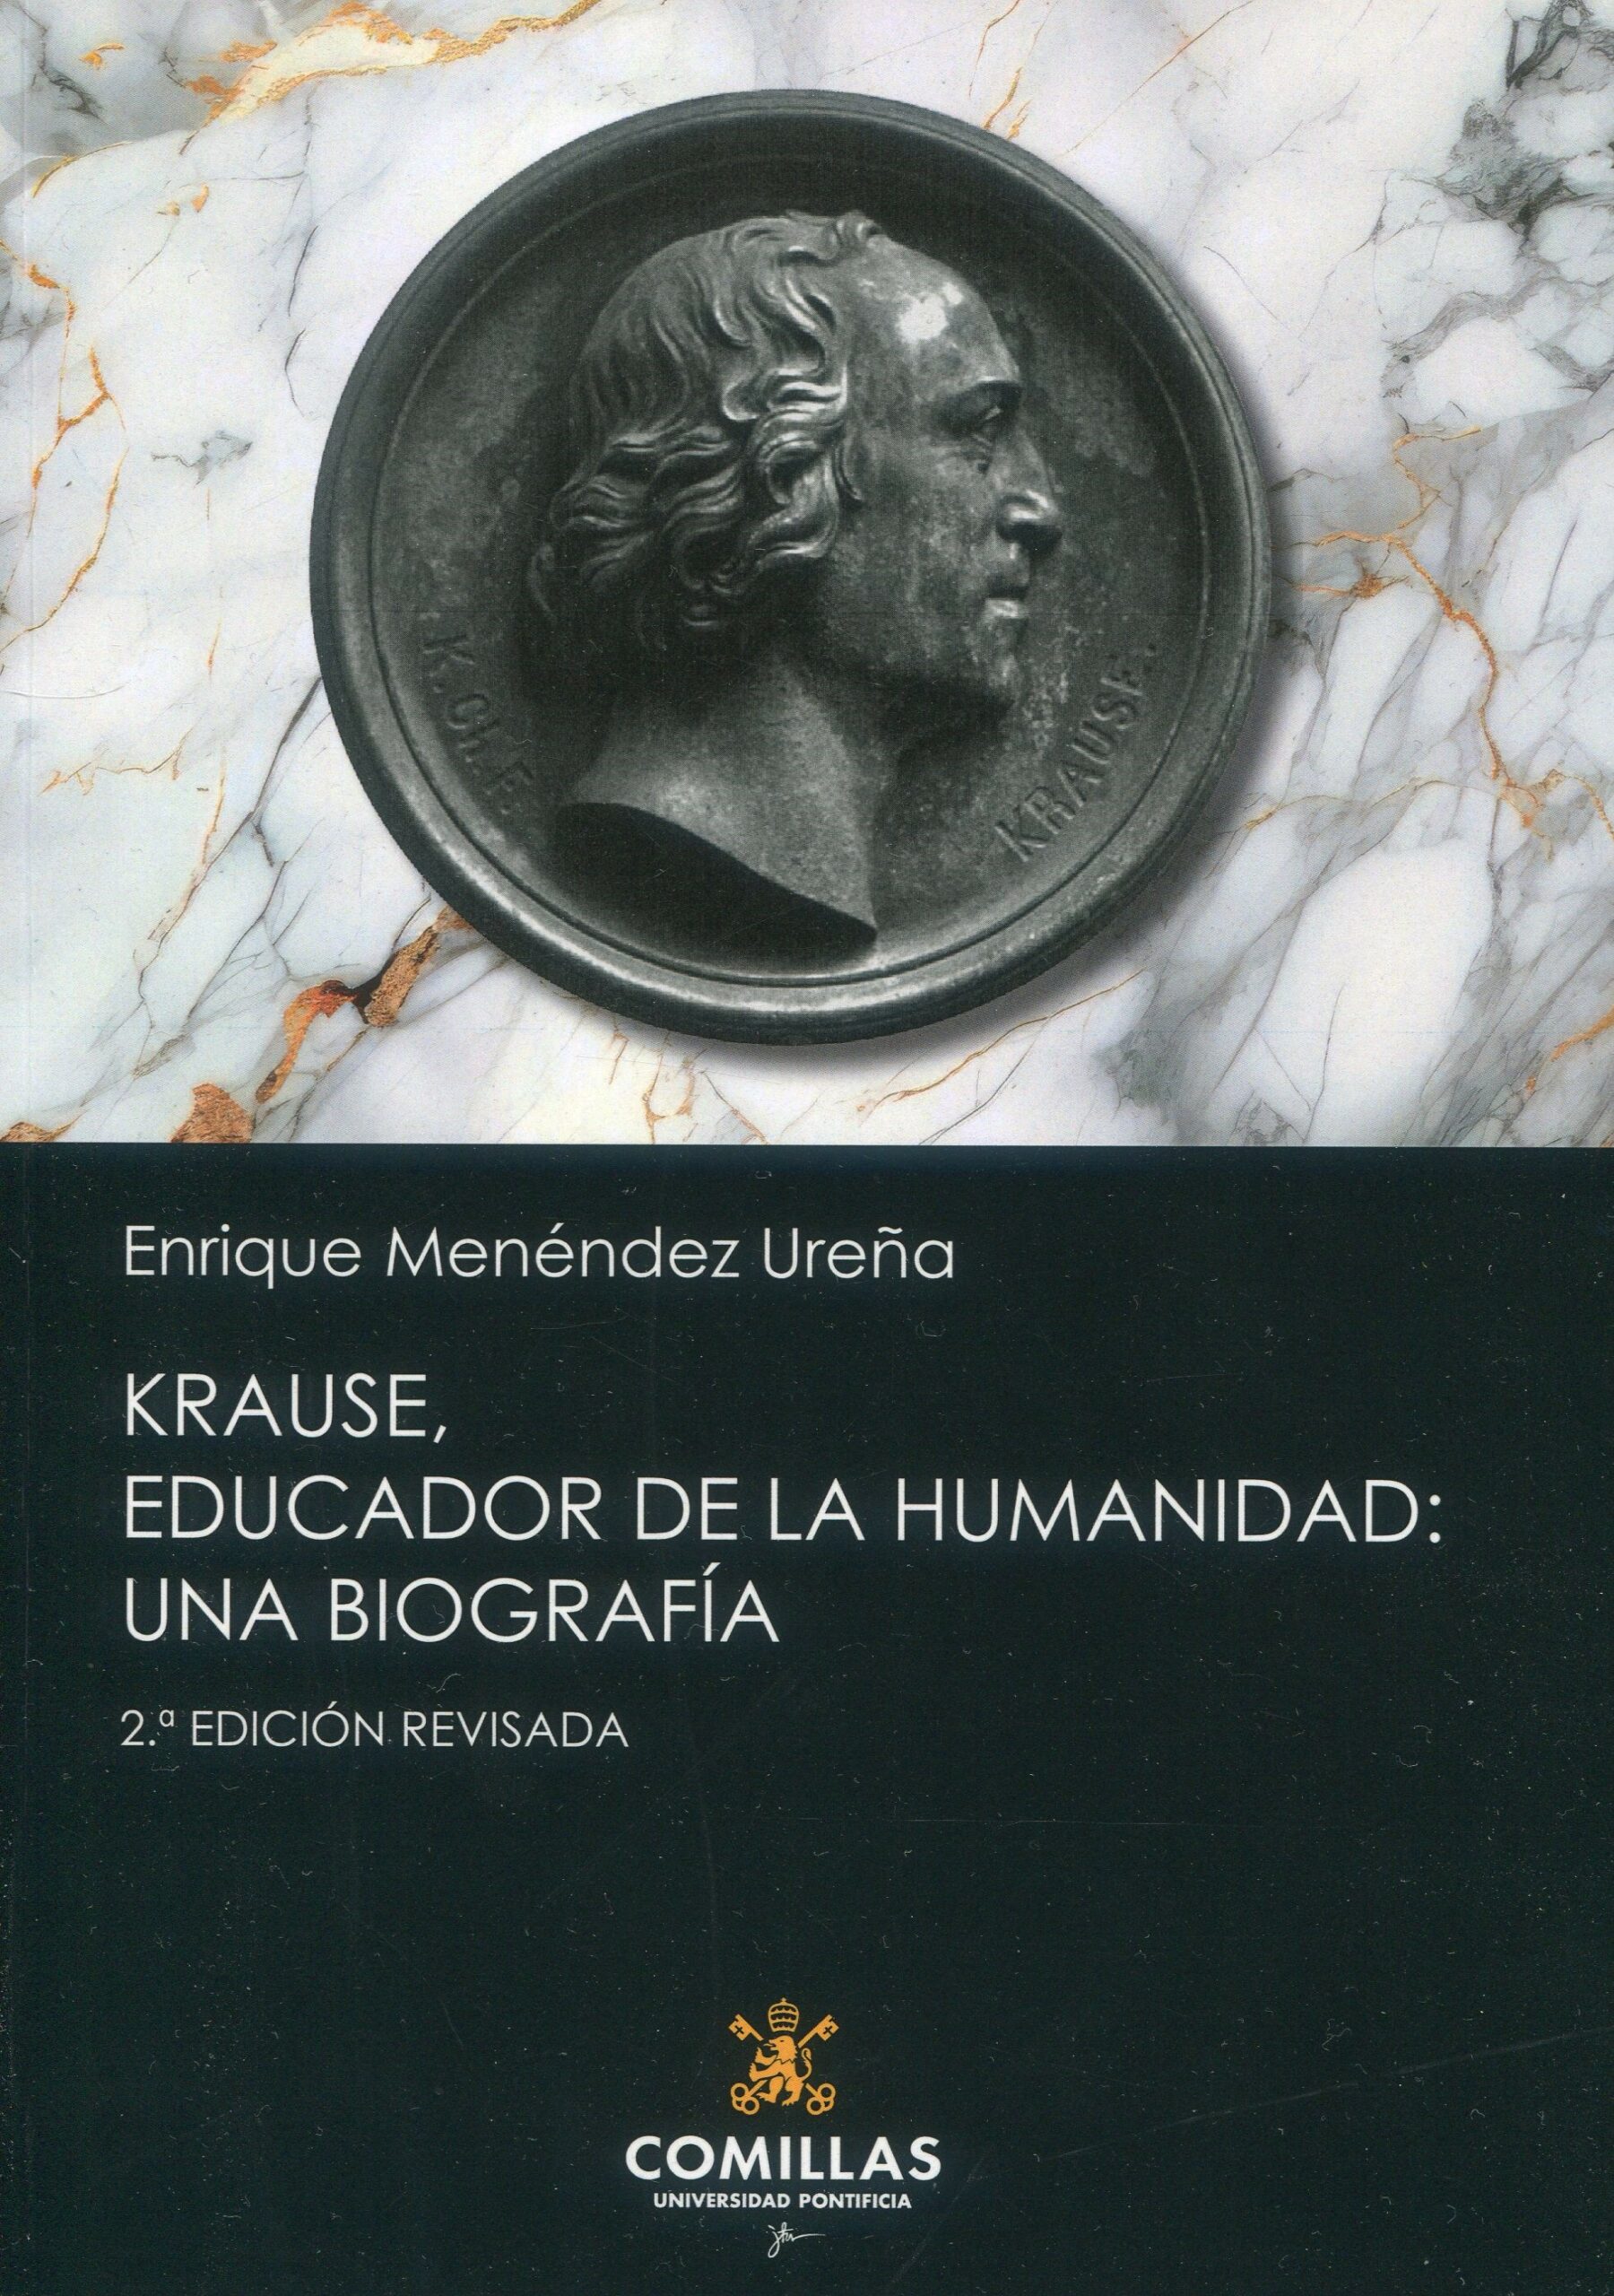 Krause, educador de la humanidad